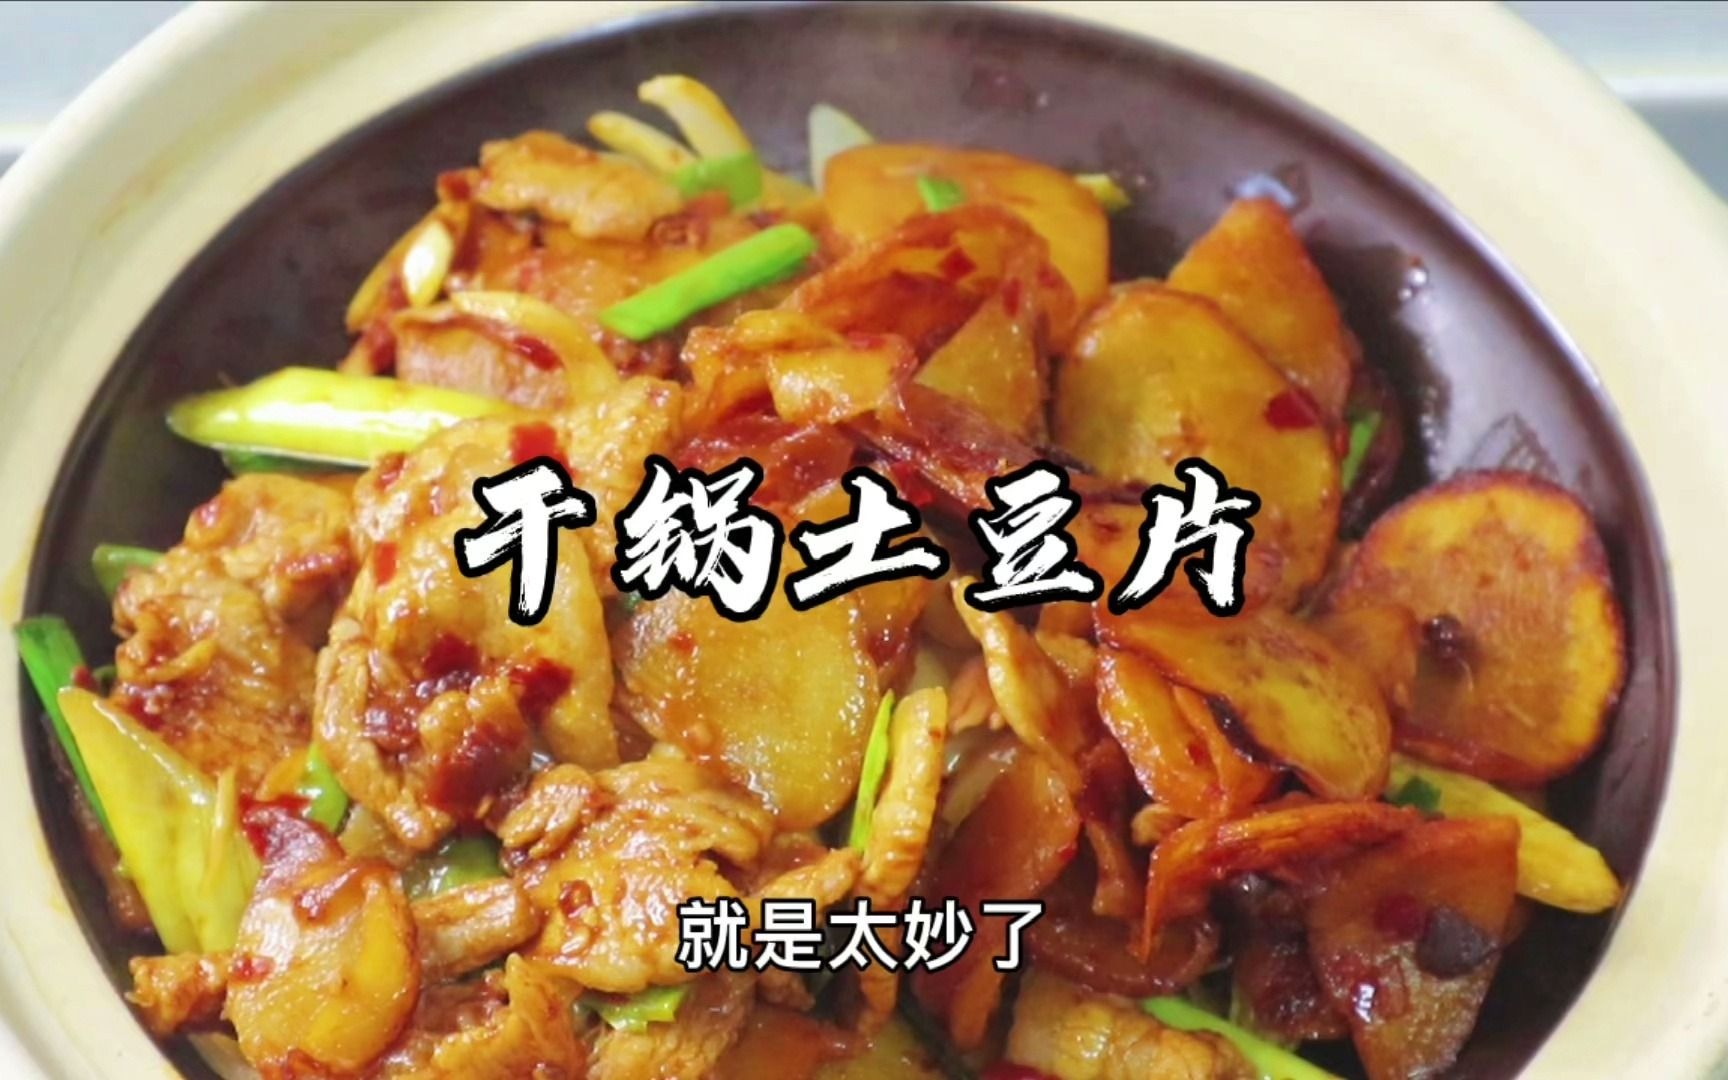 干锅土豆片 绝对是土豆最妙的吃法